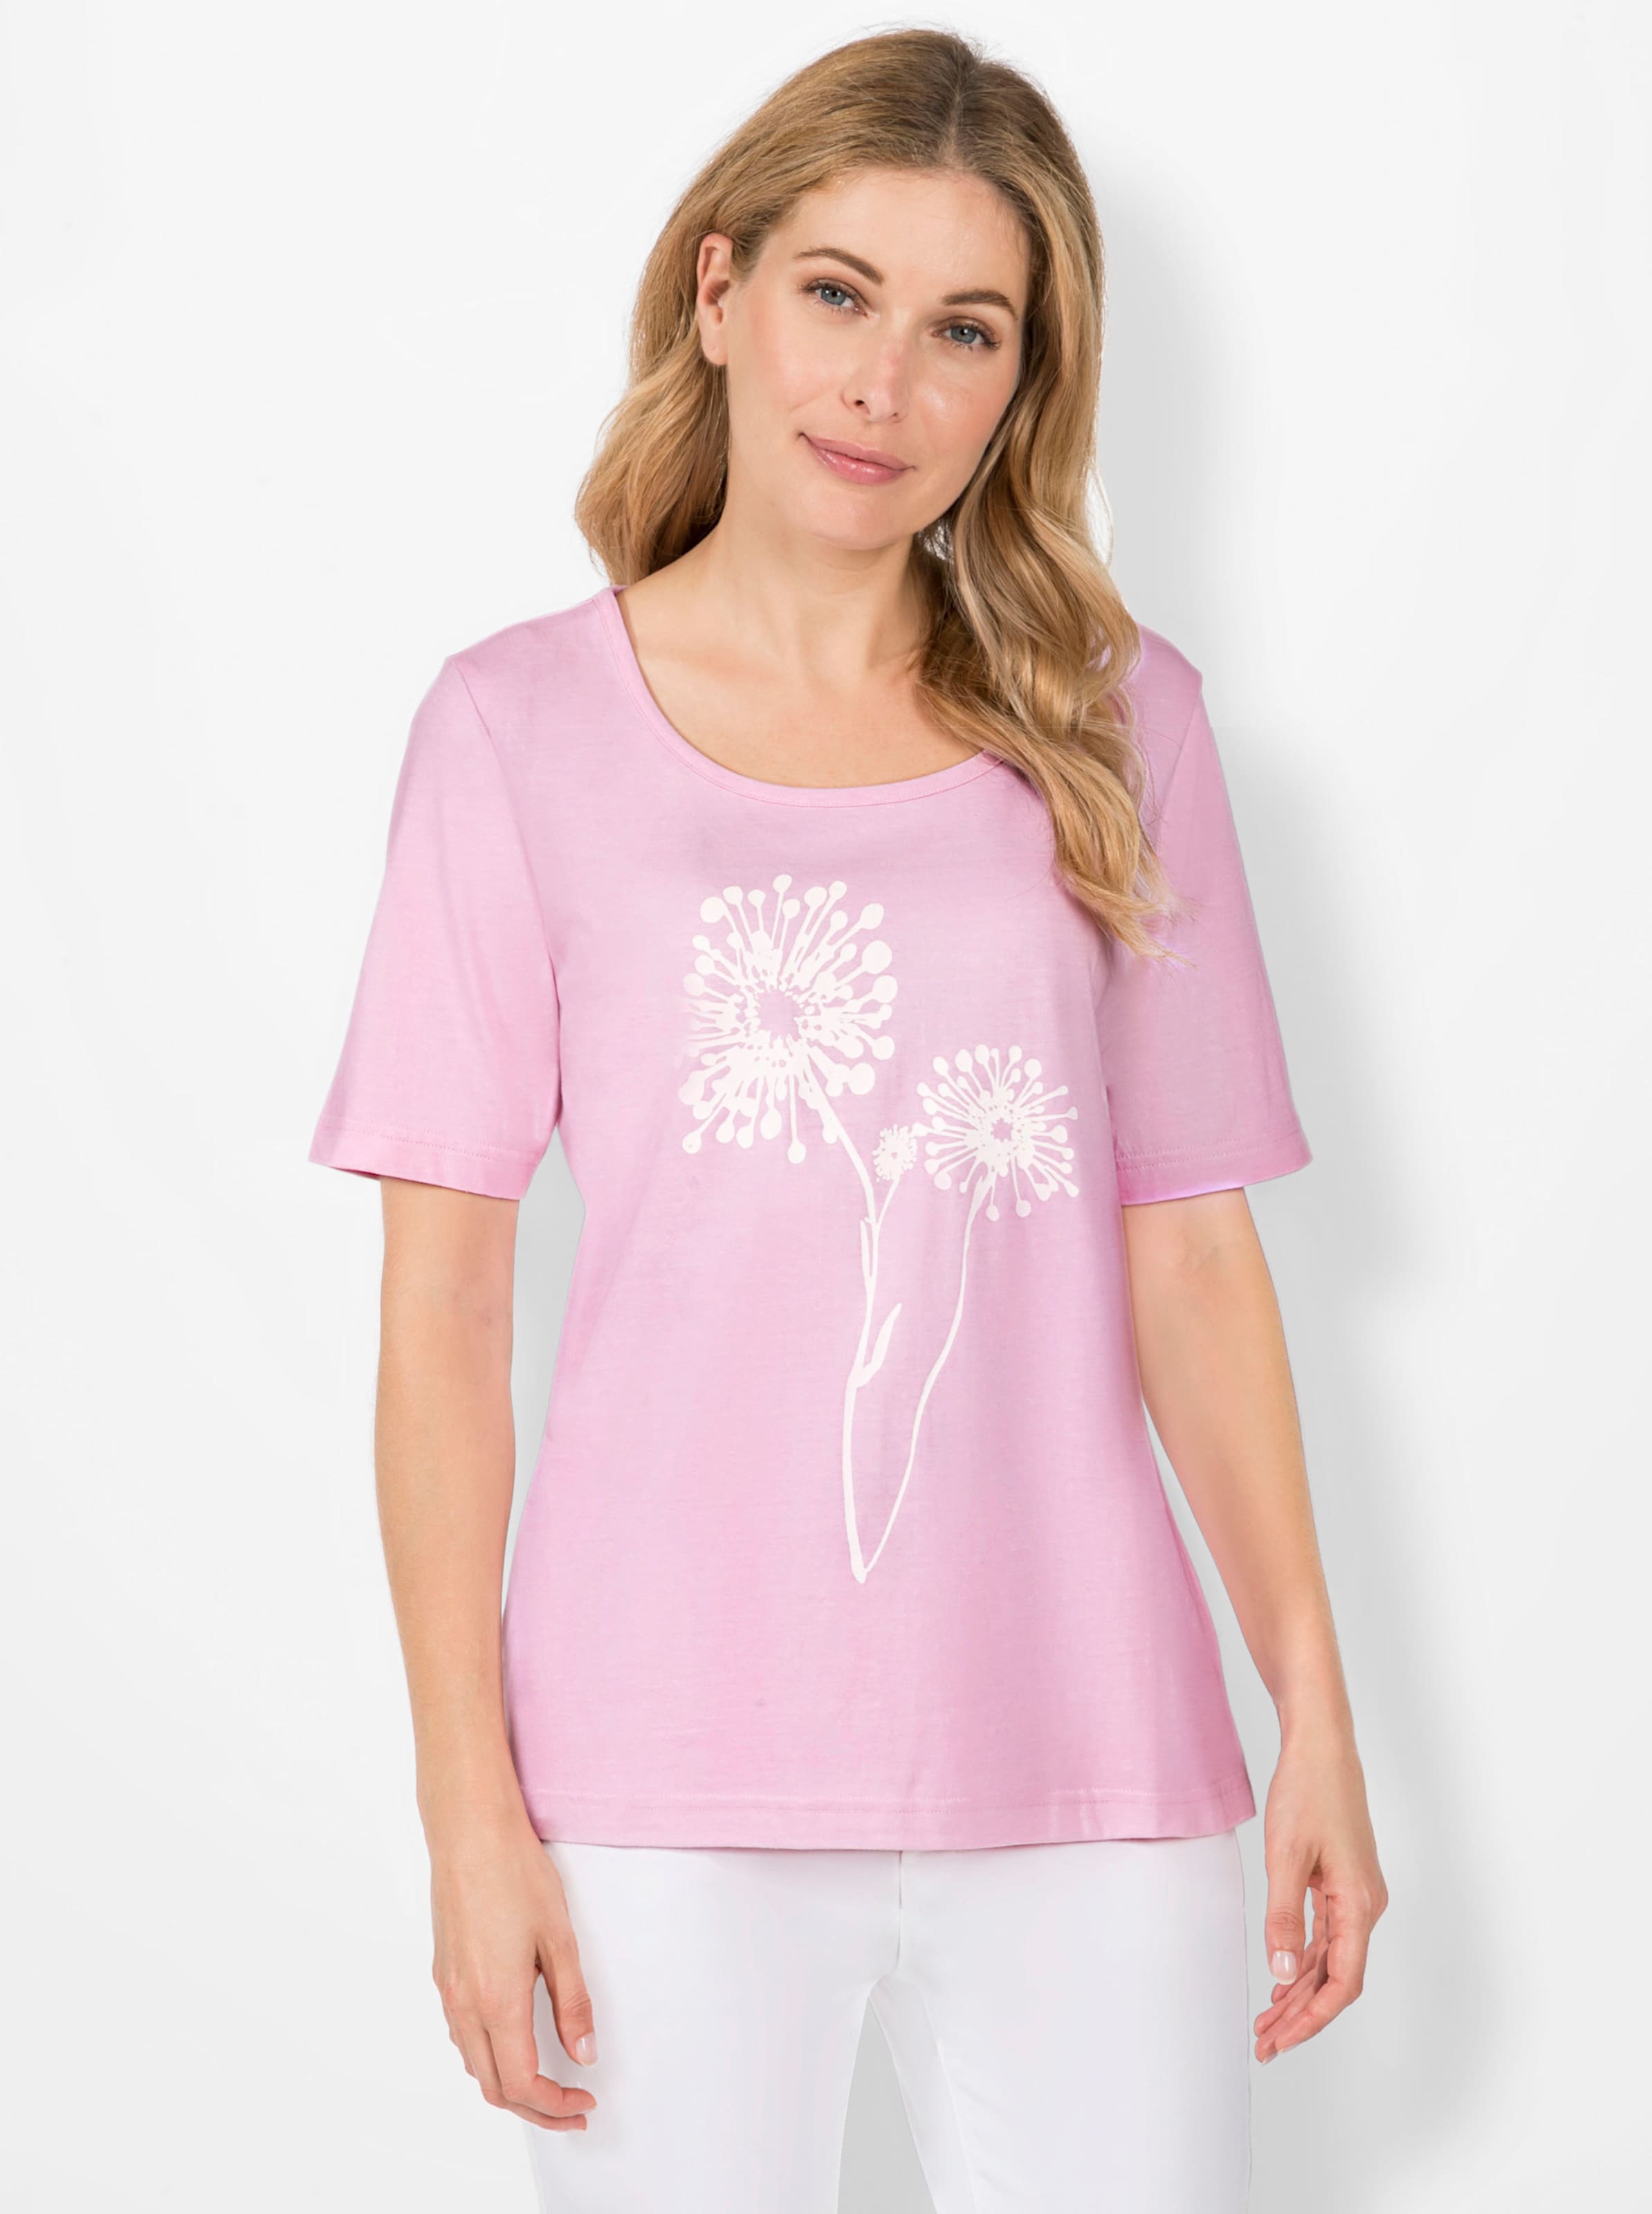 druck günstig Kaufen-Print-Shirt in rosé von heine. Print-Shirt in rosé von heine <![CDATA[Pusteblumen haben uns schon als Kinder fasziniert – und weil sie auch heute nichts von ihrem Reiz verloren haben schmücken sie als wunderschönes Druck-Motiv dieses Shirt. 